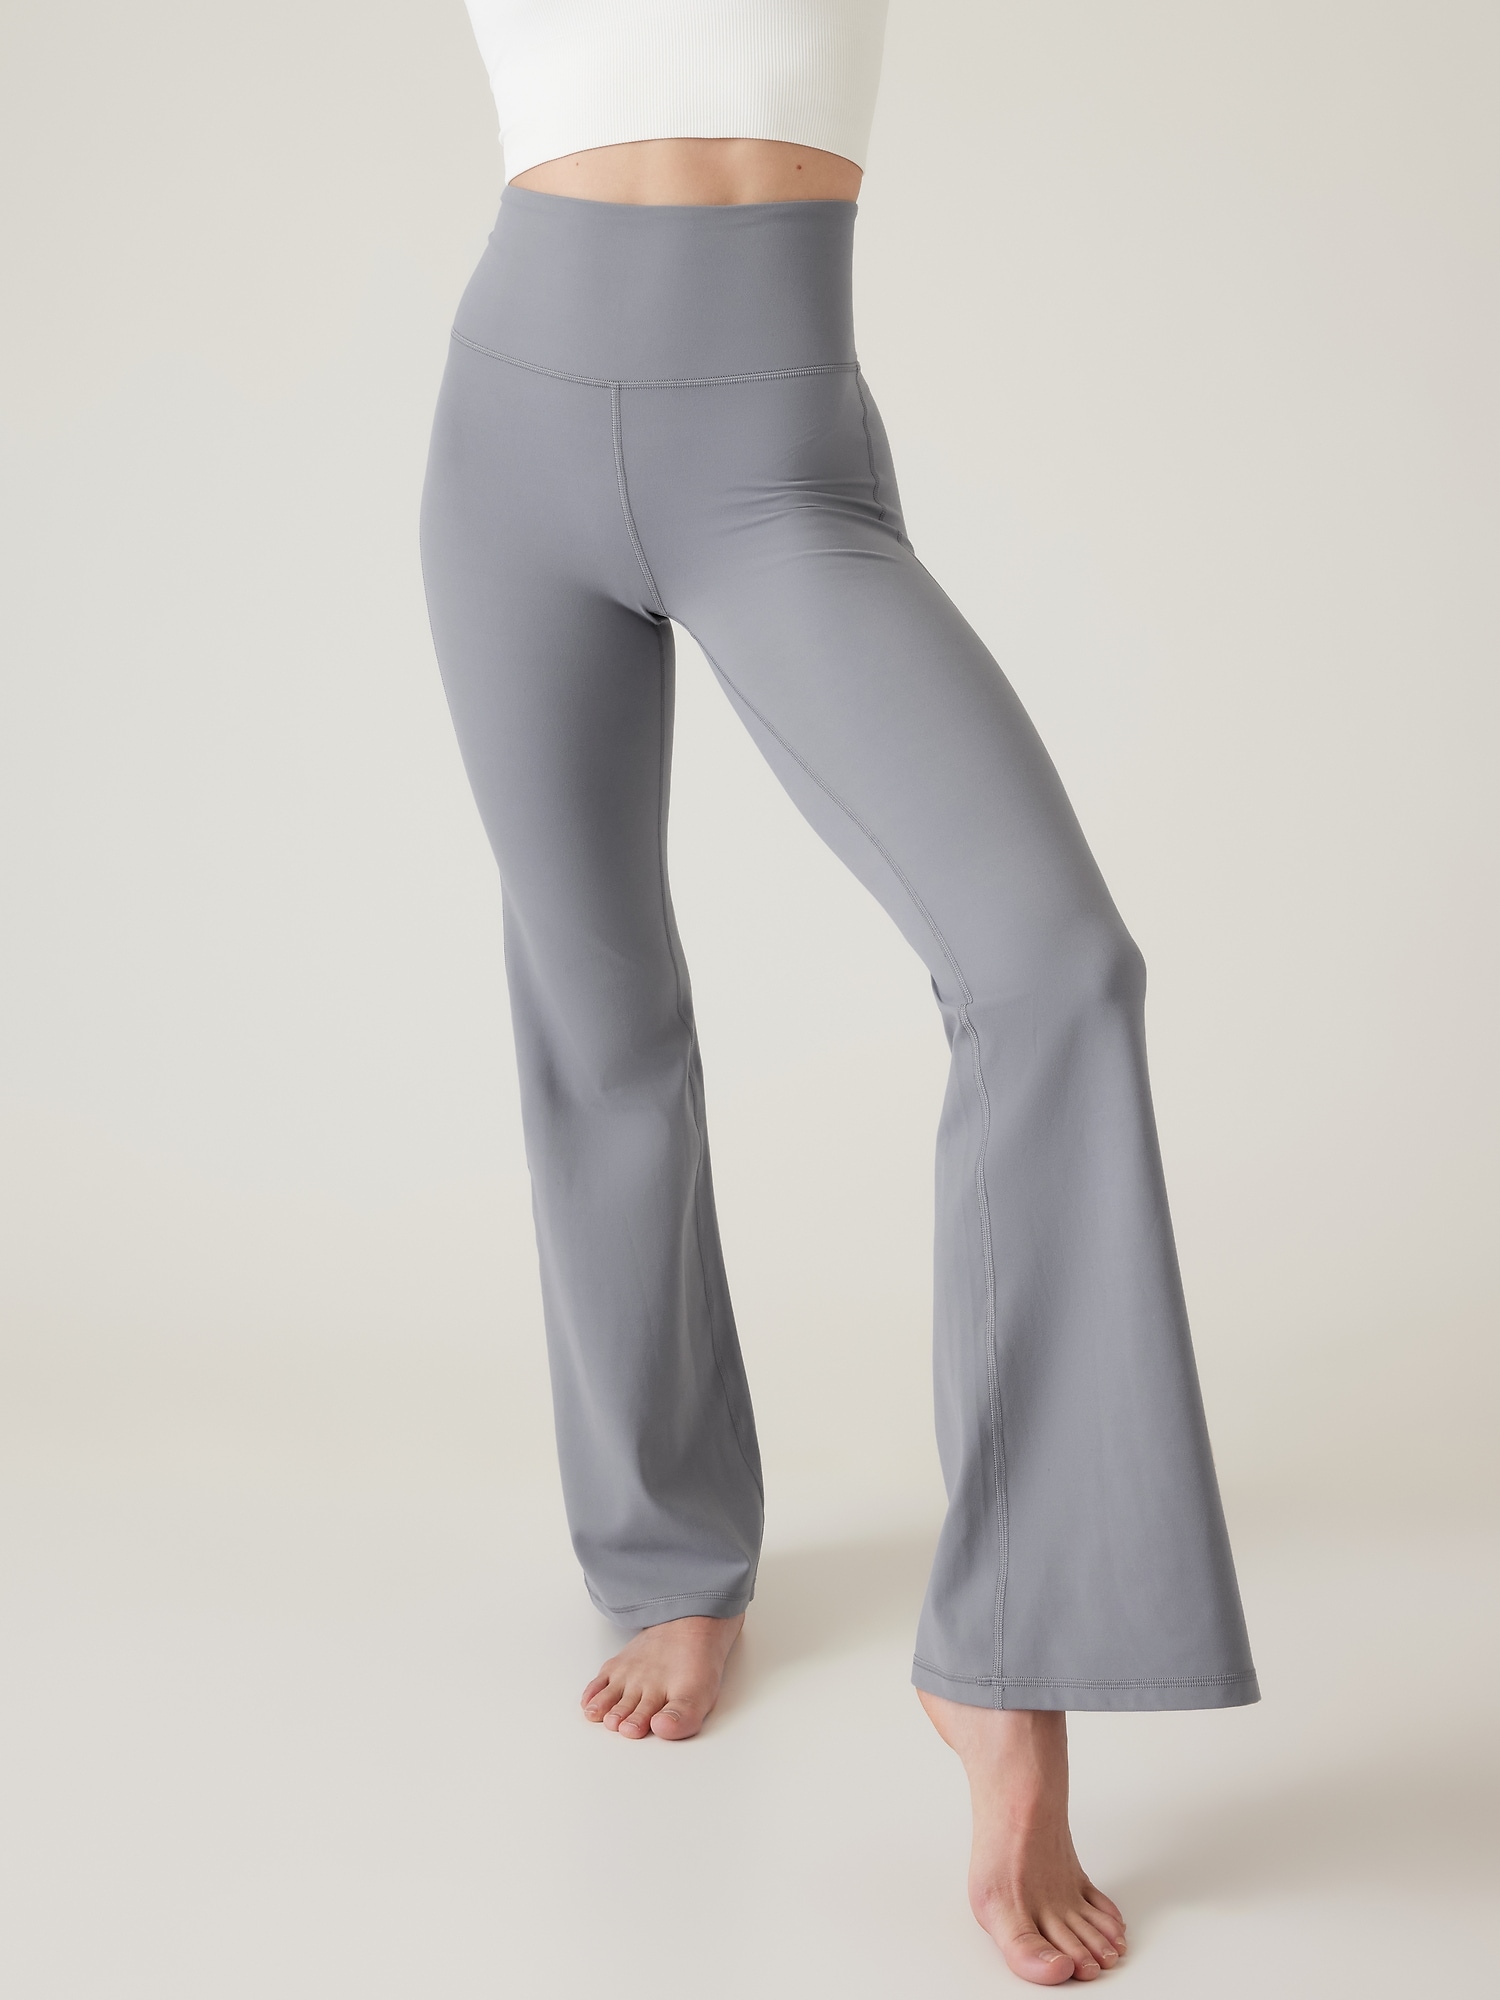 ATHLETA Elation Flare Pant Size XSP XS Petite Navy #981683 Yoga Workout